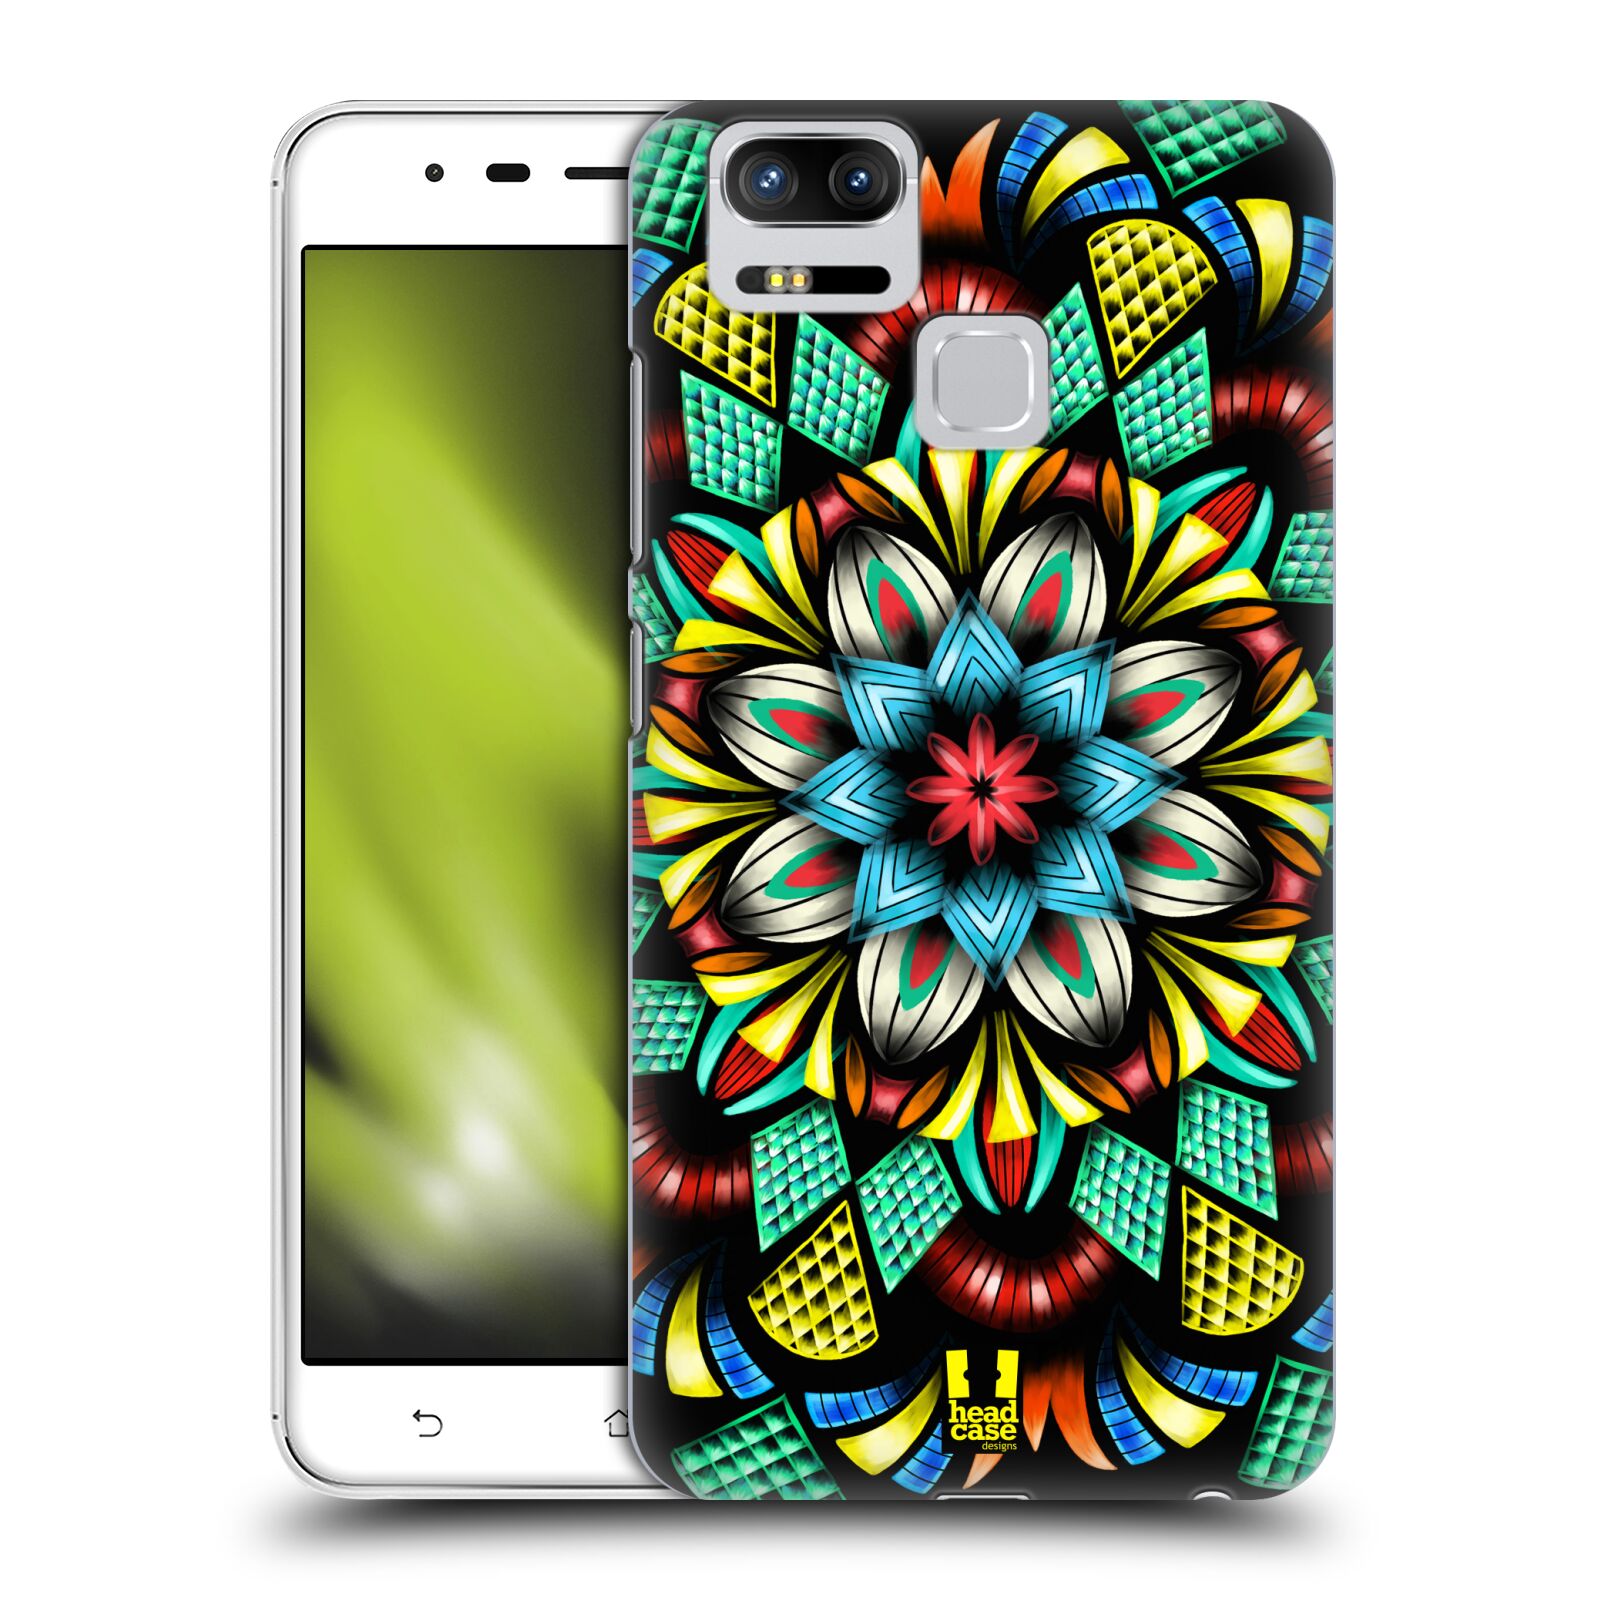 HEAD CASE plastový obal na mobil Asus Zenfone 3 Zoom ZE553KL vzor Indie Mandala kaleidoskop barevný vzor TRADIČNÍ